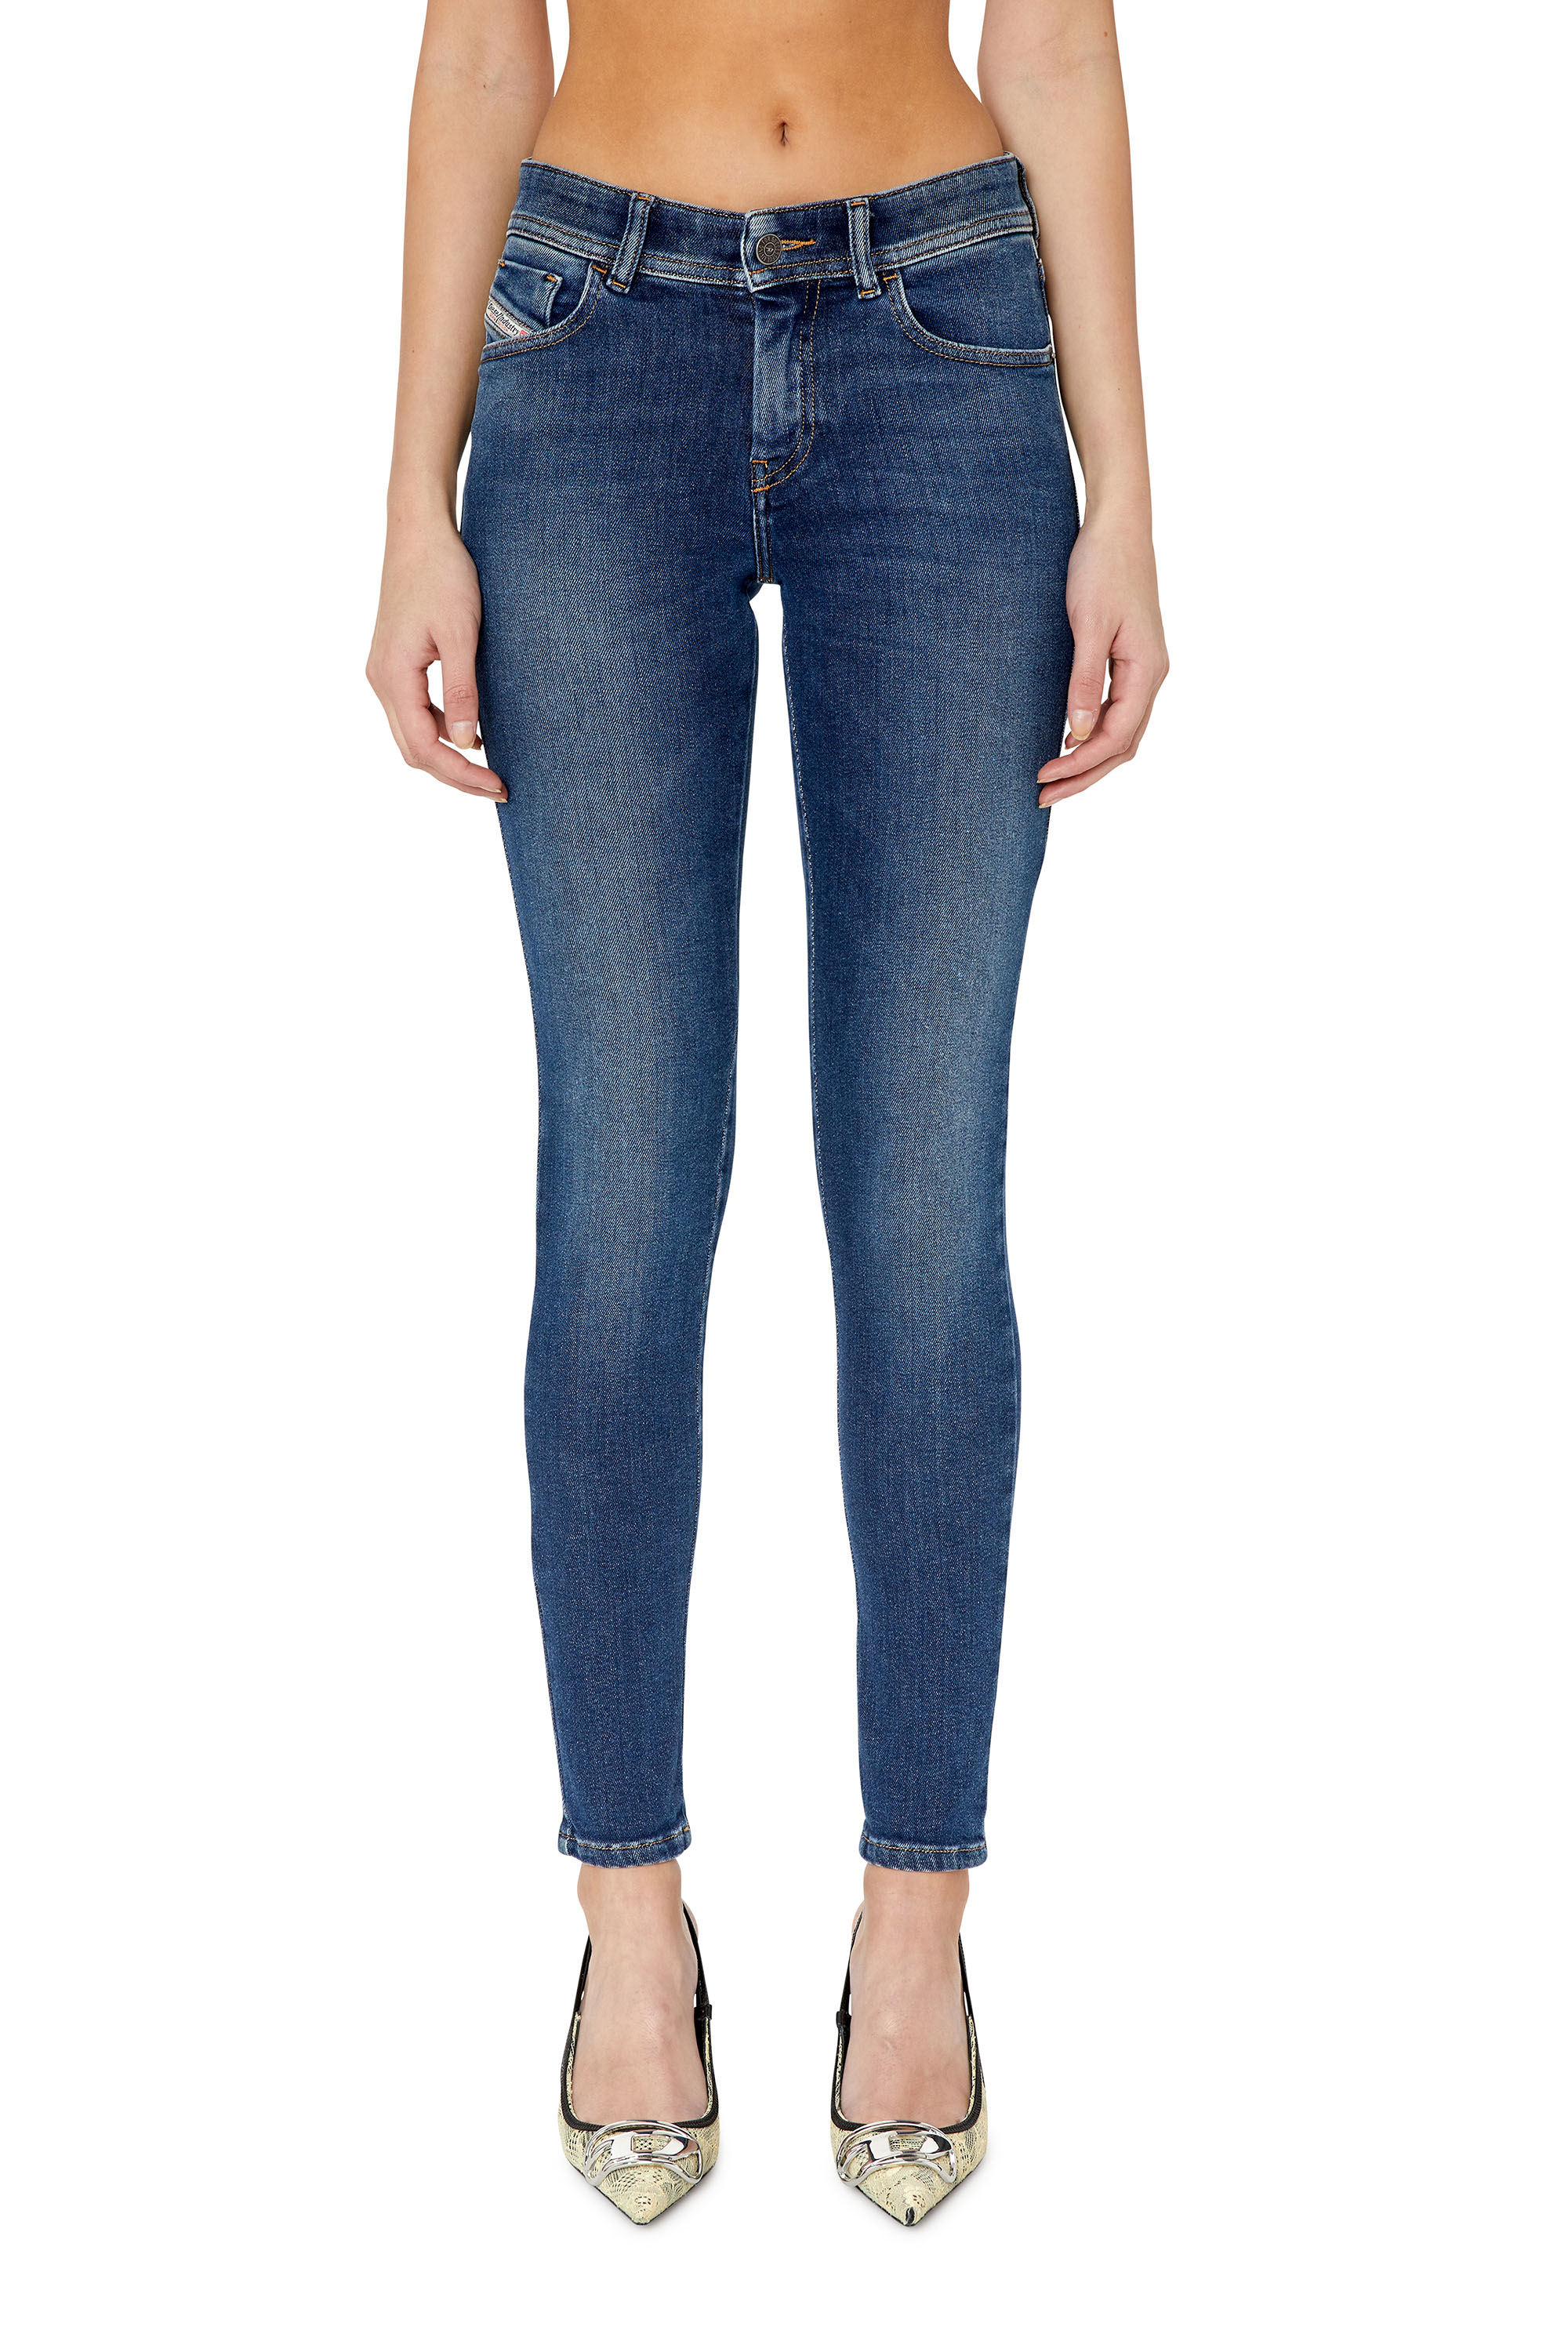 MODA DONNA Jeans Jeggings & Skinny & Slim Elasticizzato sconto 73% Blu navy W28 Diesel Jeggings & Skinny & Slim 